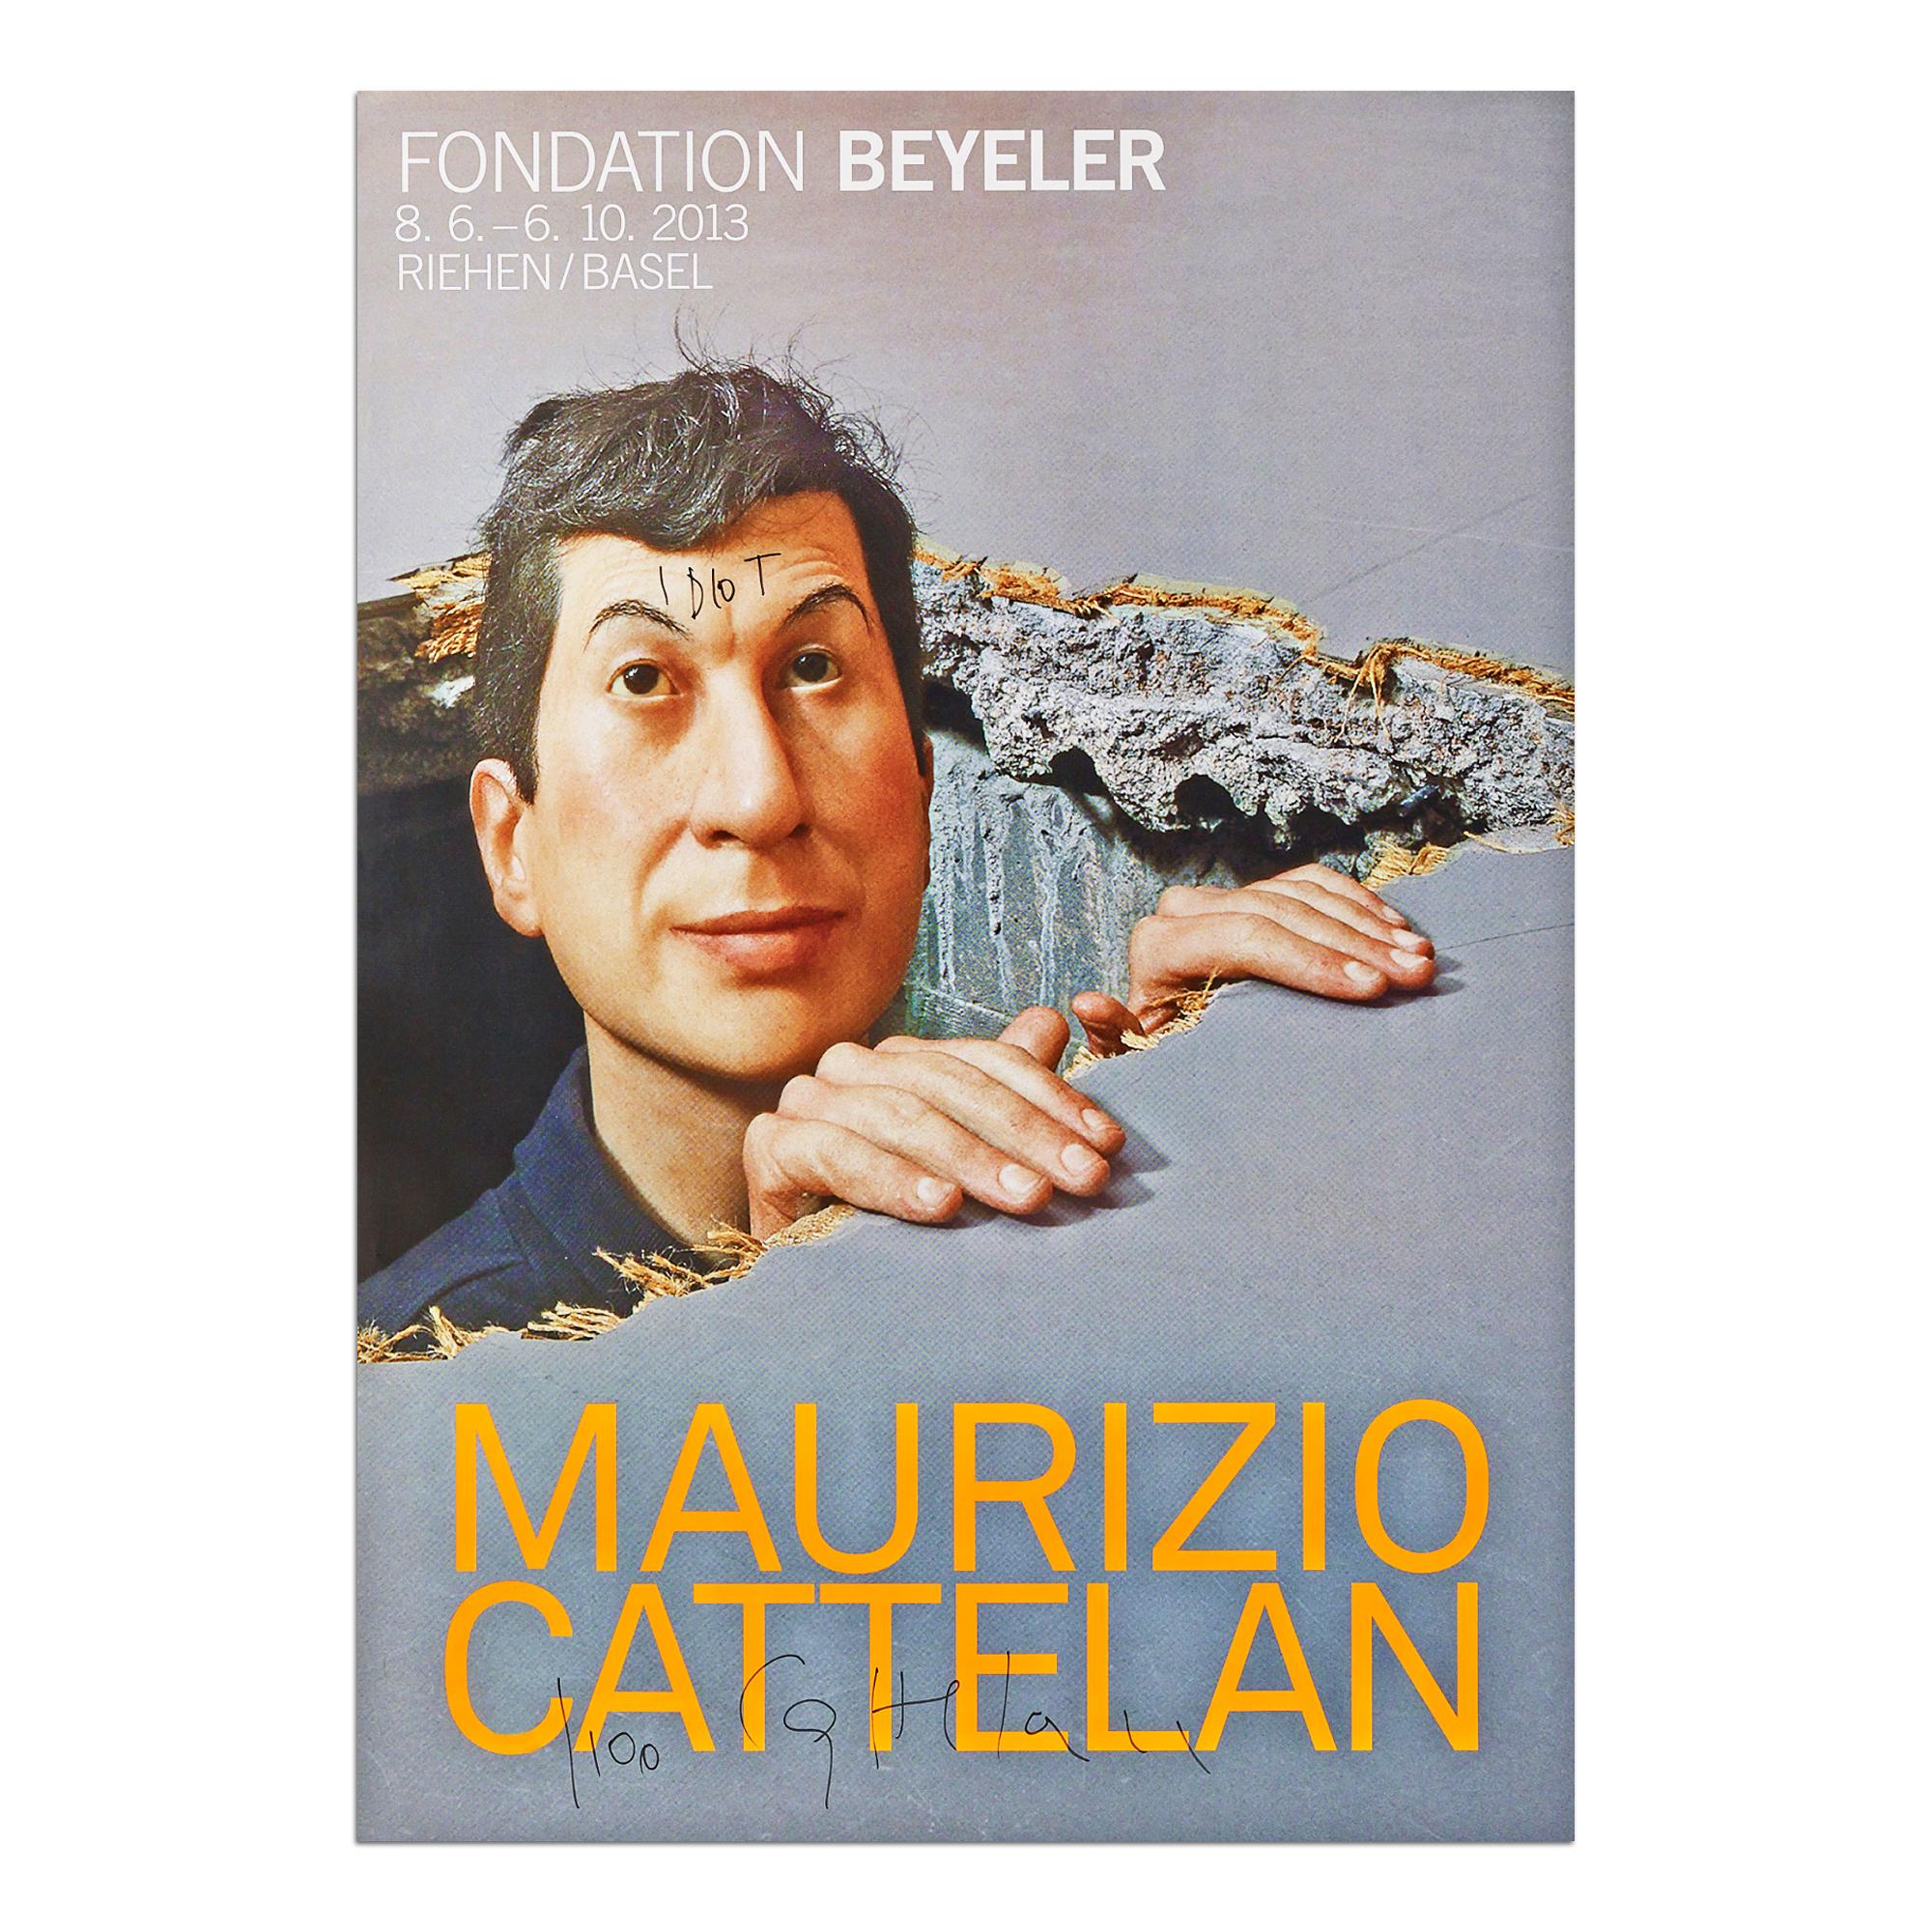 Maurizio Cattelan (italien, né en 1960)
Affiche d'exposition de la Fondation Beyeler, 2013
Dimensions : 128 x 90 cm : 128 x 90 cm
Édition de 100 exemplaires : signés et numérotés à la main au stylo-feutre noir
Condit : Mint